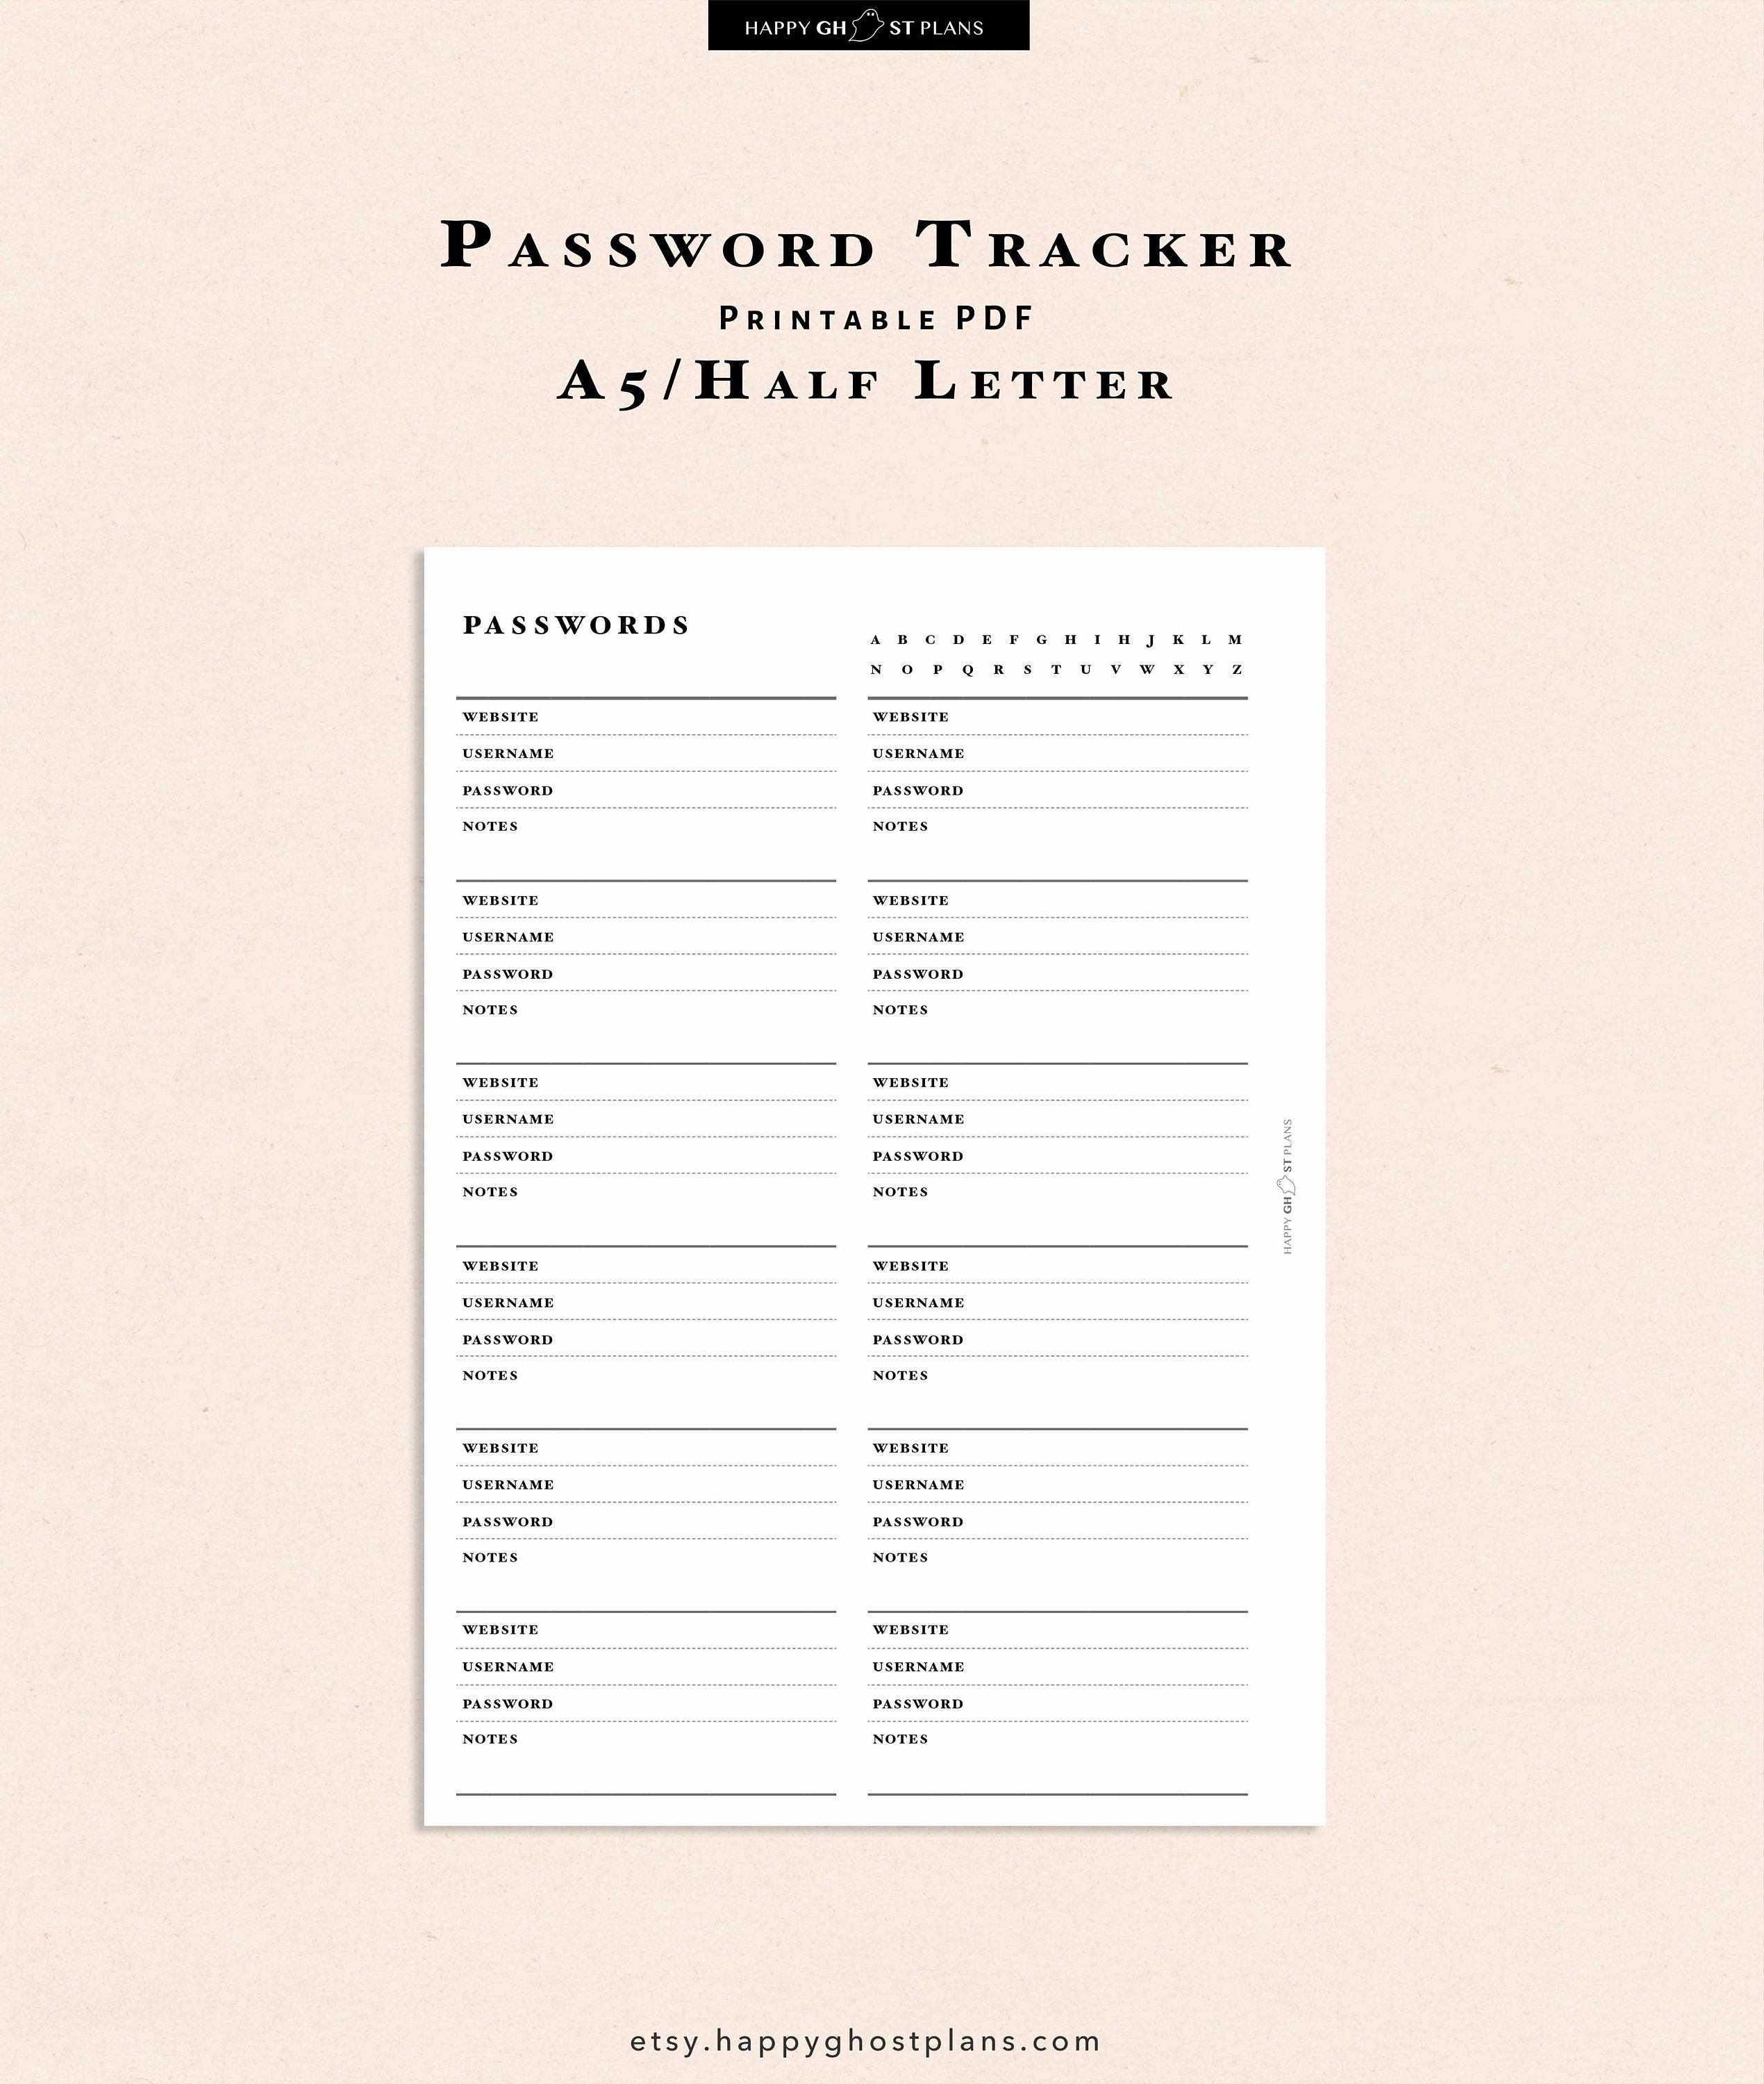 Suivi de mot de passe imprimable, insert PDF remplissable, tracker